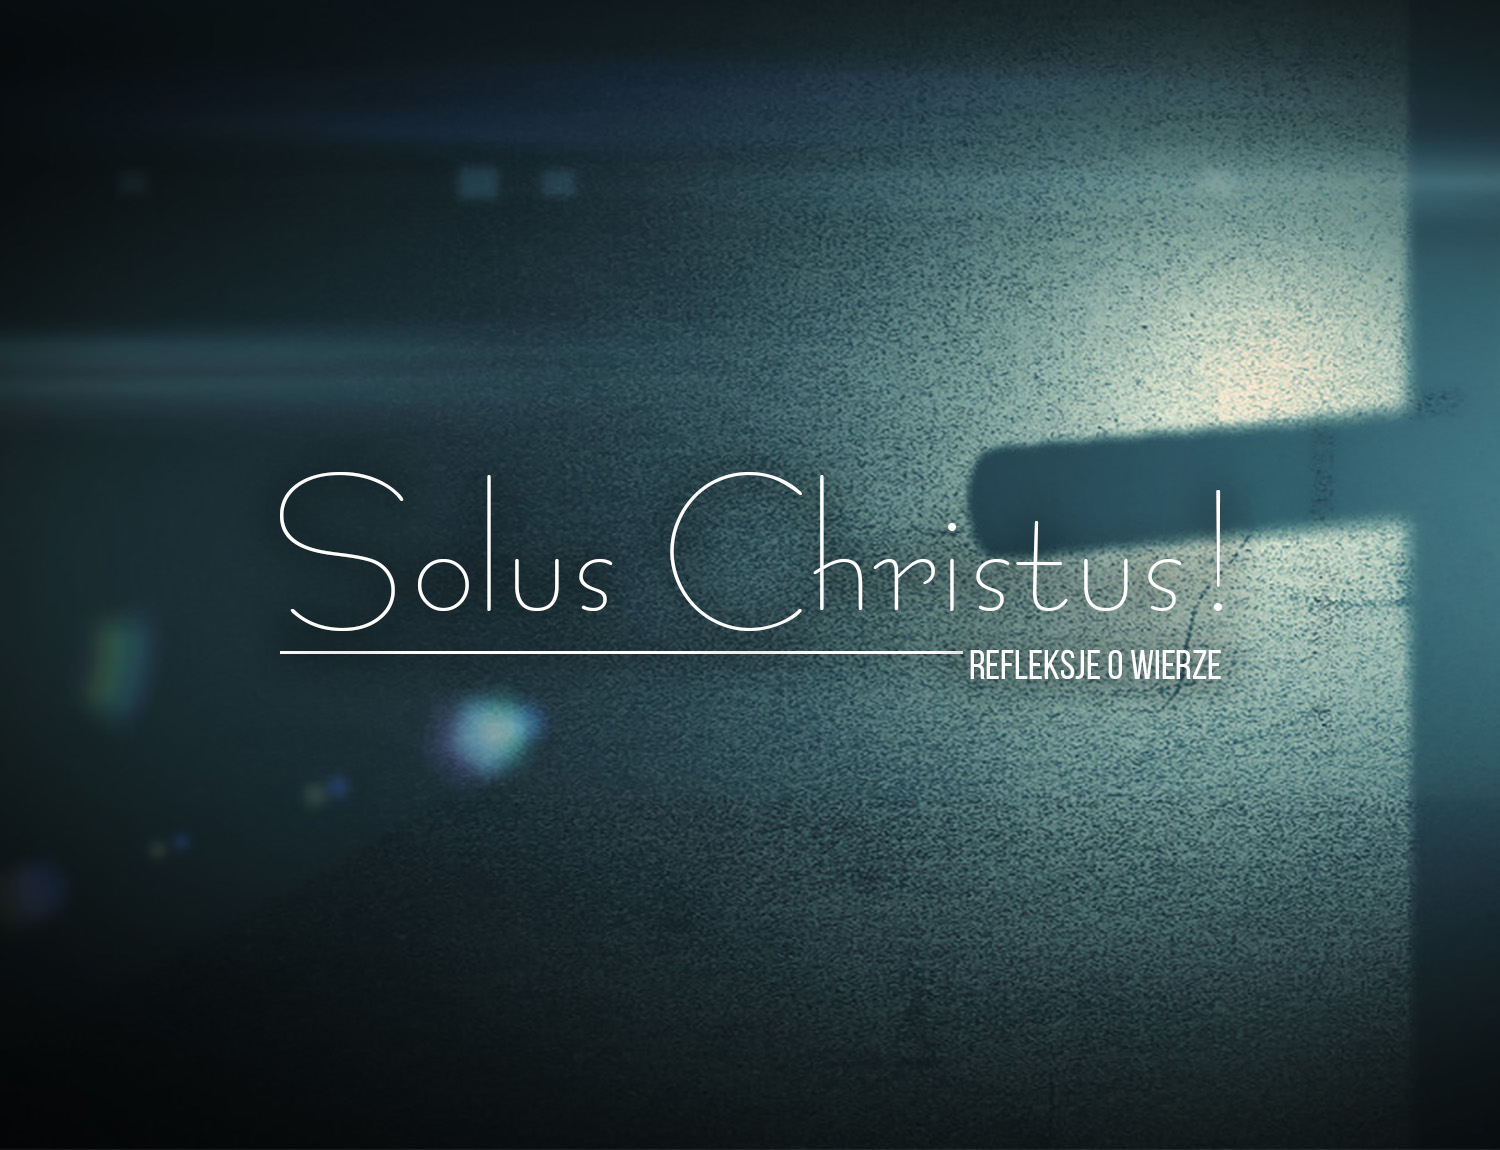 Solus Christus!